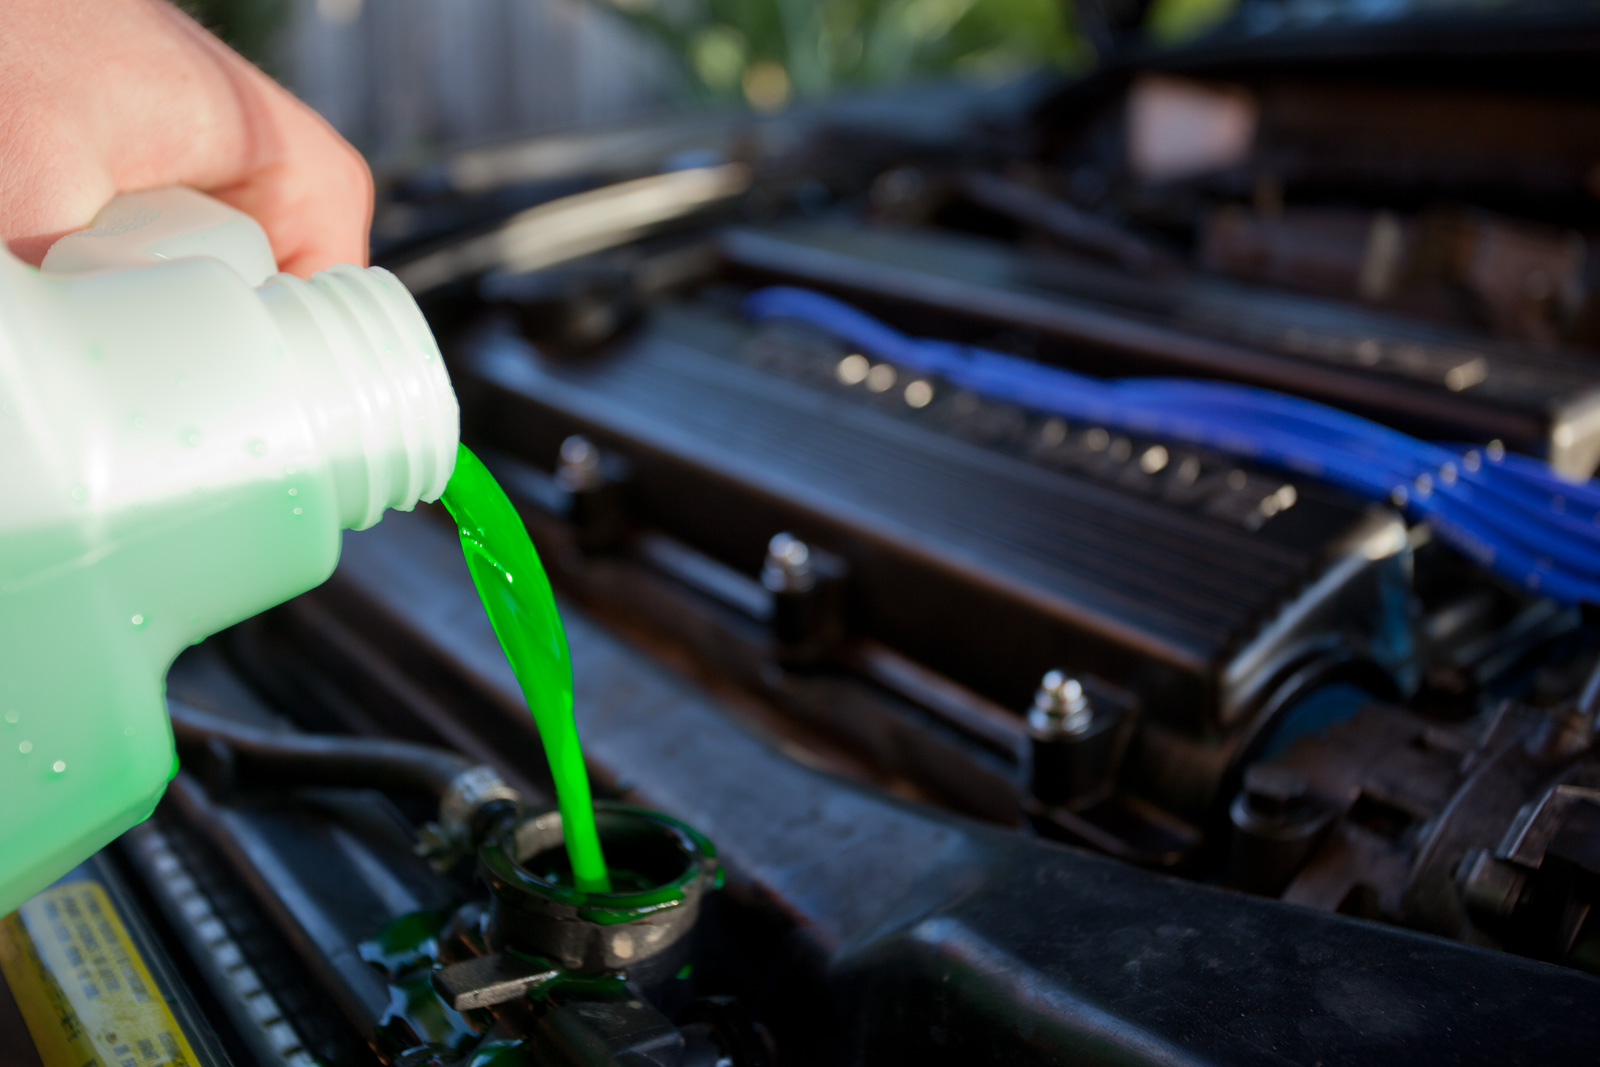 bổ sung hoặc thay dầu máy, nước làm mát phù hợp để đảm bảo xe không bị thiếu dầu nhớt, nước làm mát và hoạt động tốt